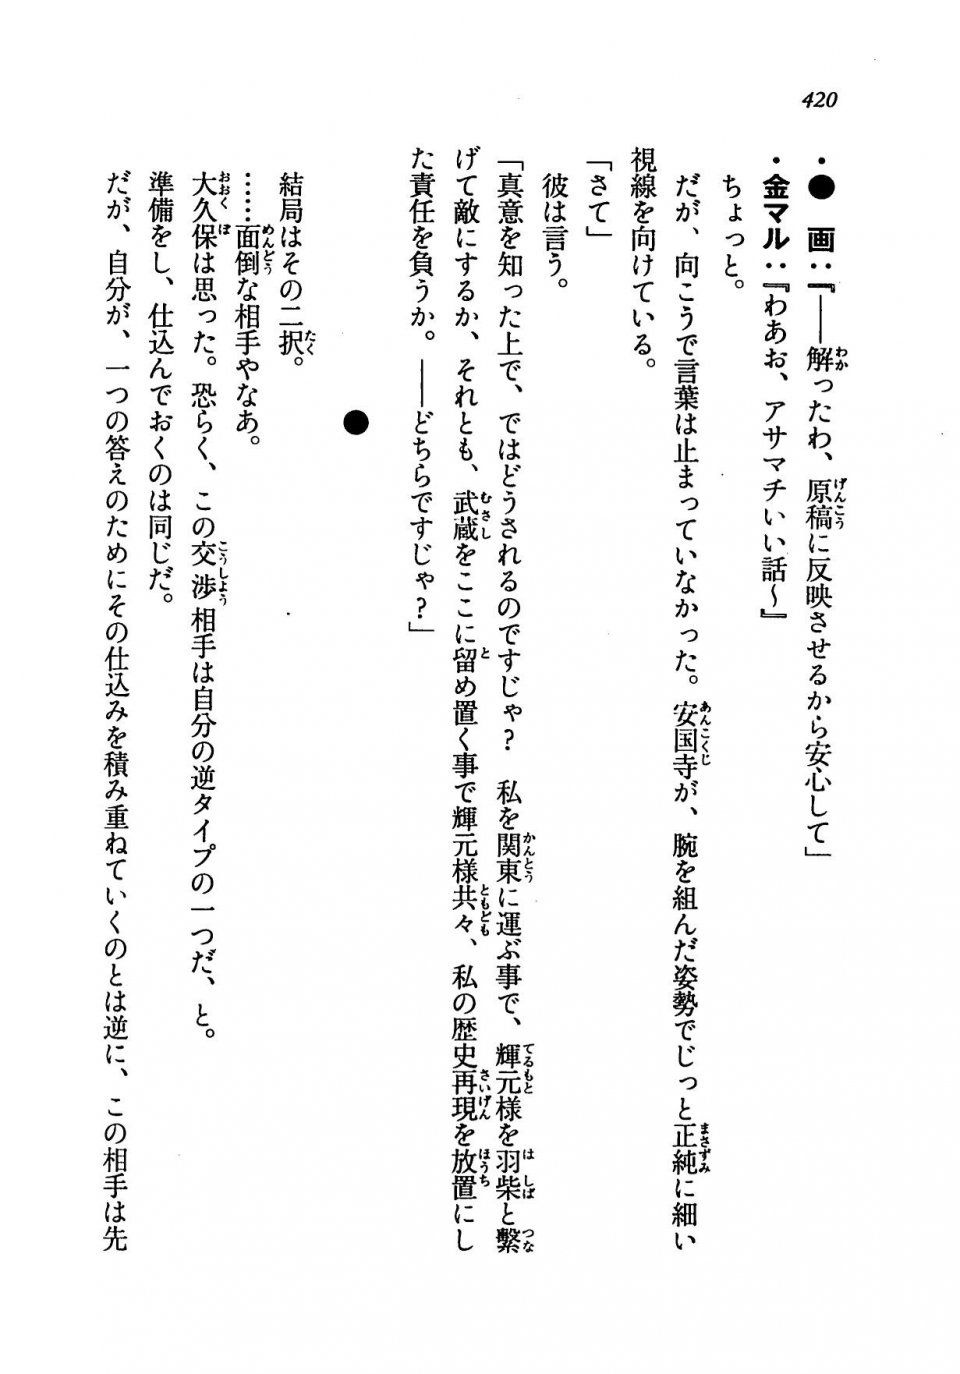 Kyoukai Senjou no Horizon LN Vol 19(8A) - Photo #420